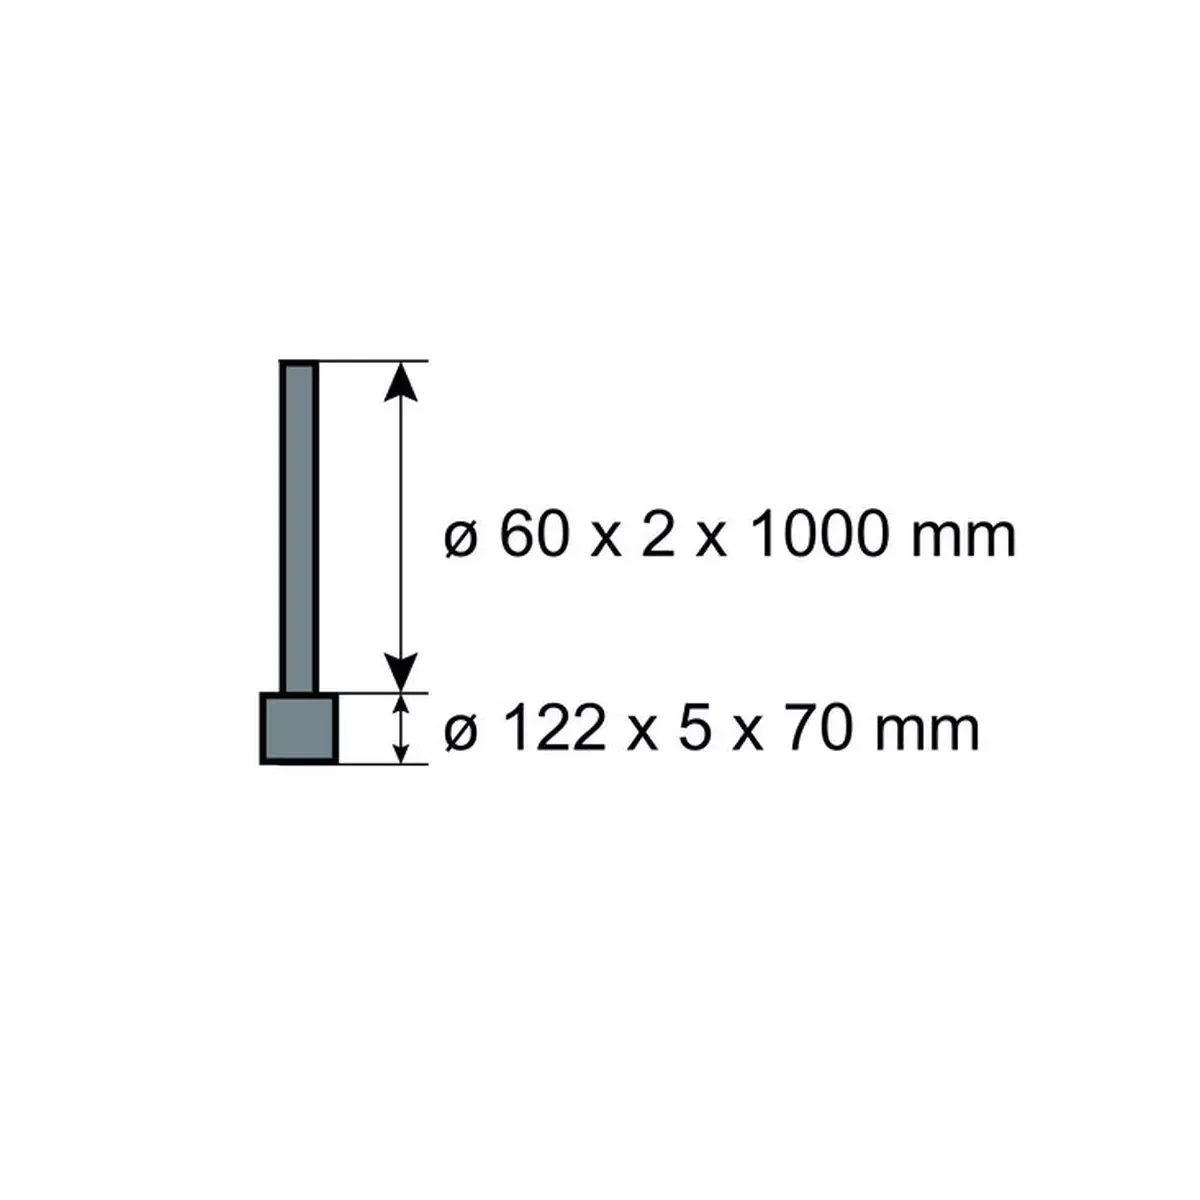 Ampelmastaufsetzter für ø 108 mm, feuerverzinkt, mit 3 aufgeschweißten Muttern M8